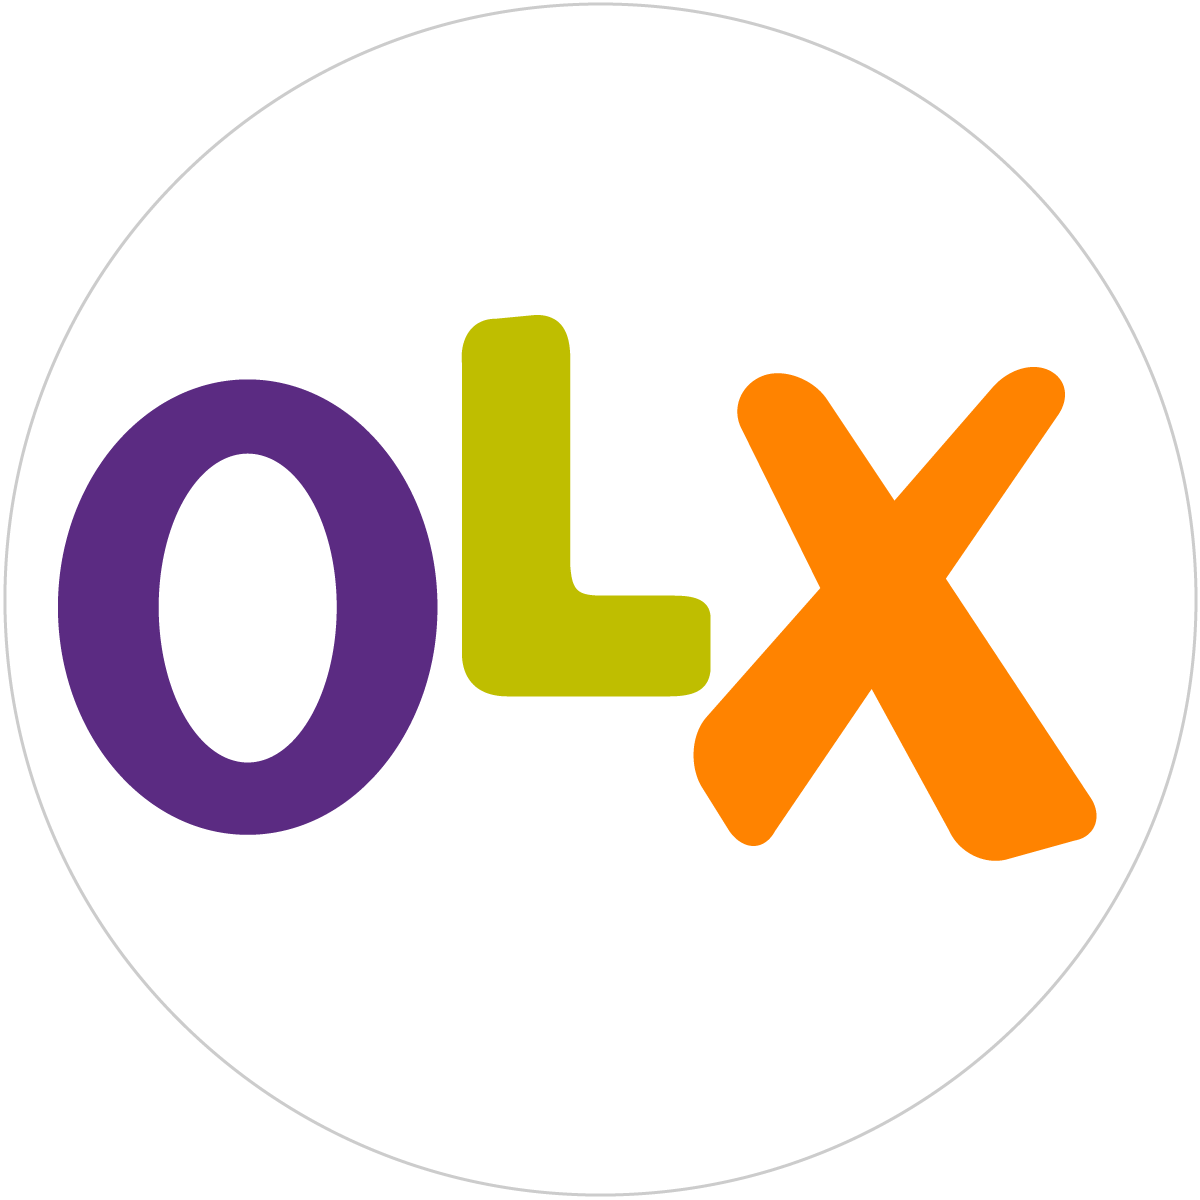 OLX App, How to Create An Account On OLX?